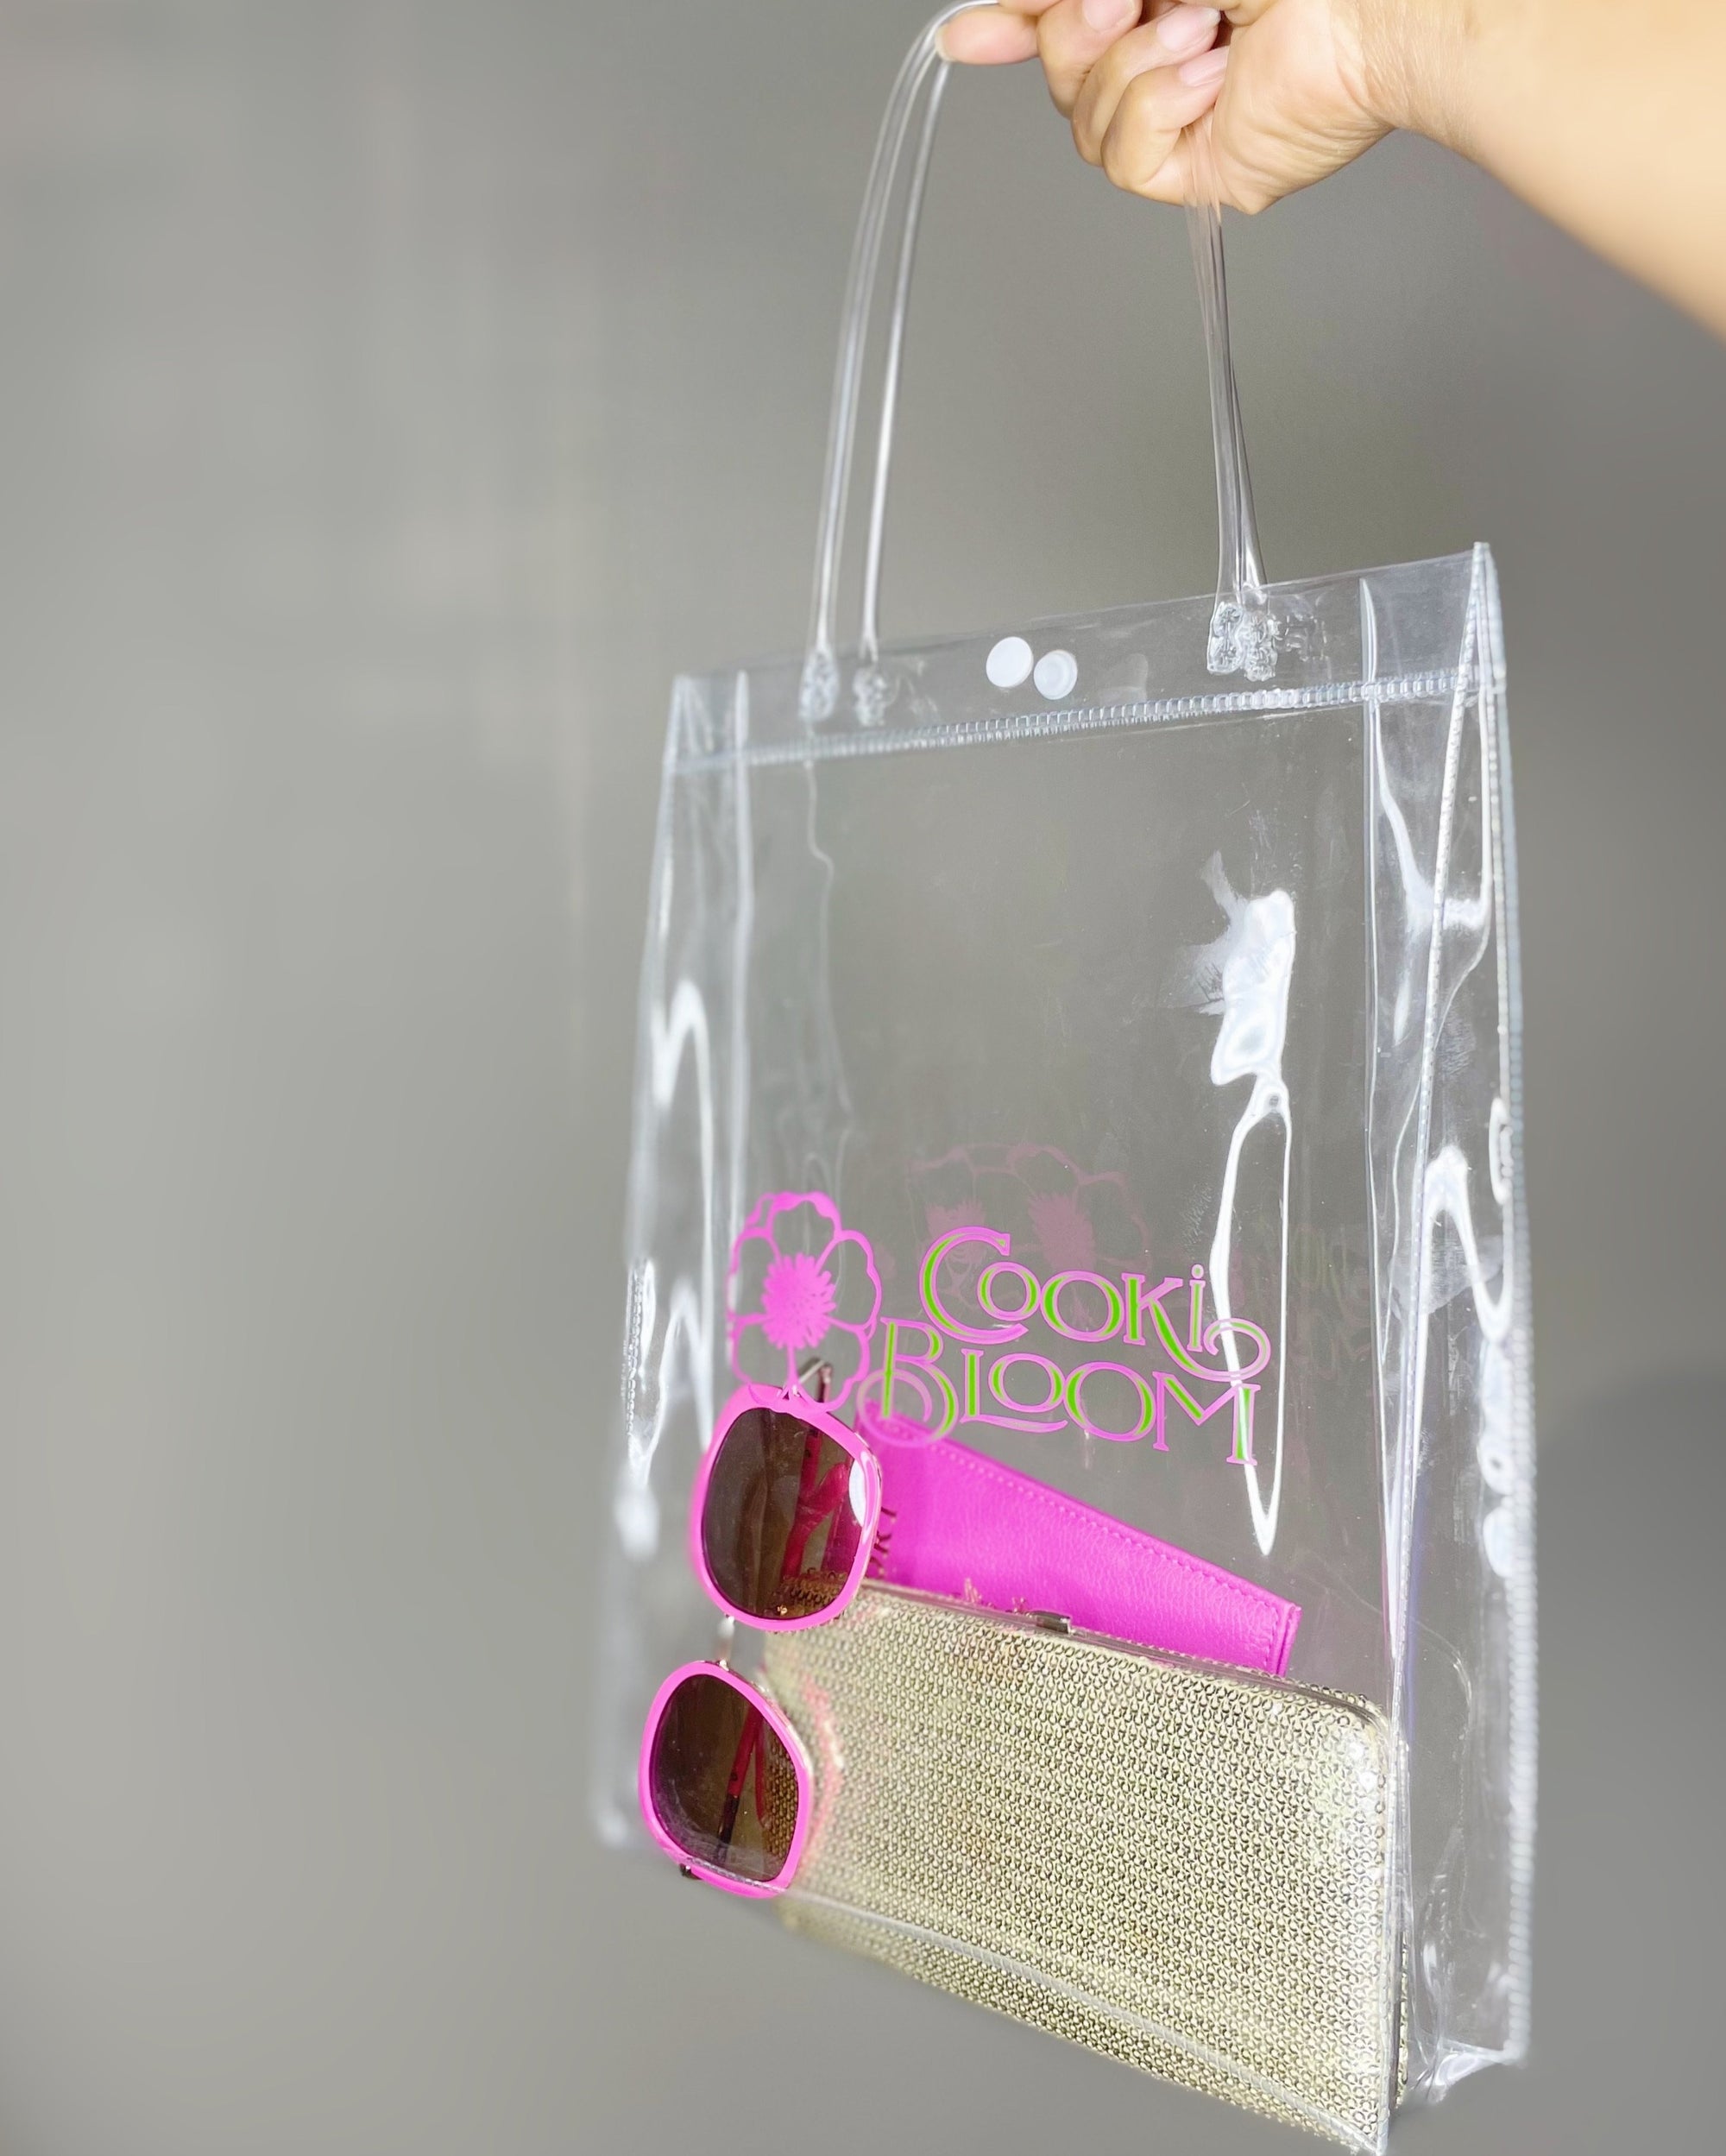 CookiBloom bag Cooki Bloom Shopper Bag